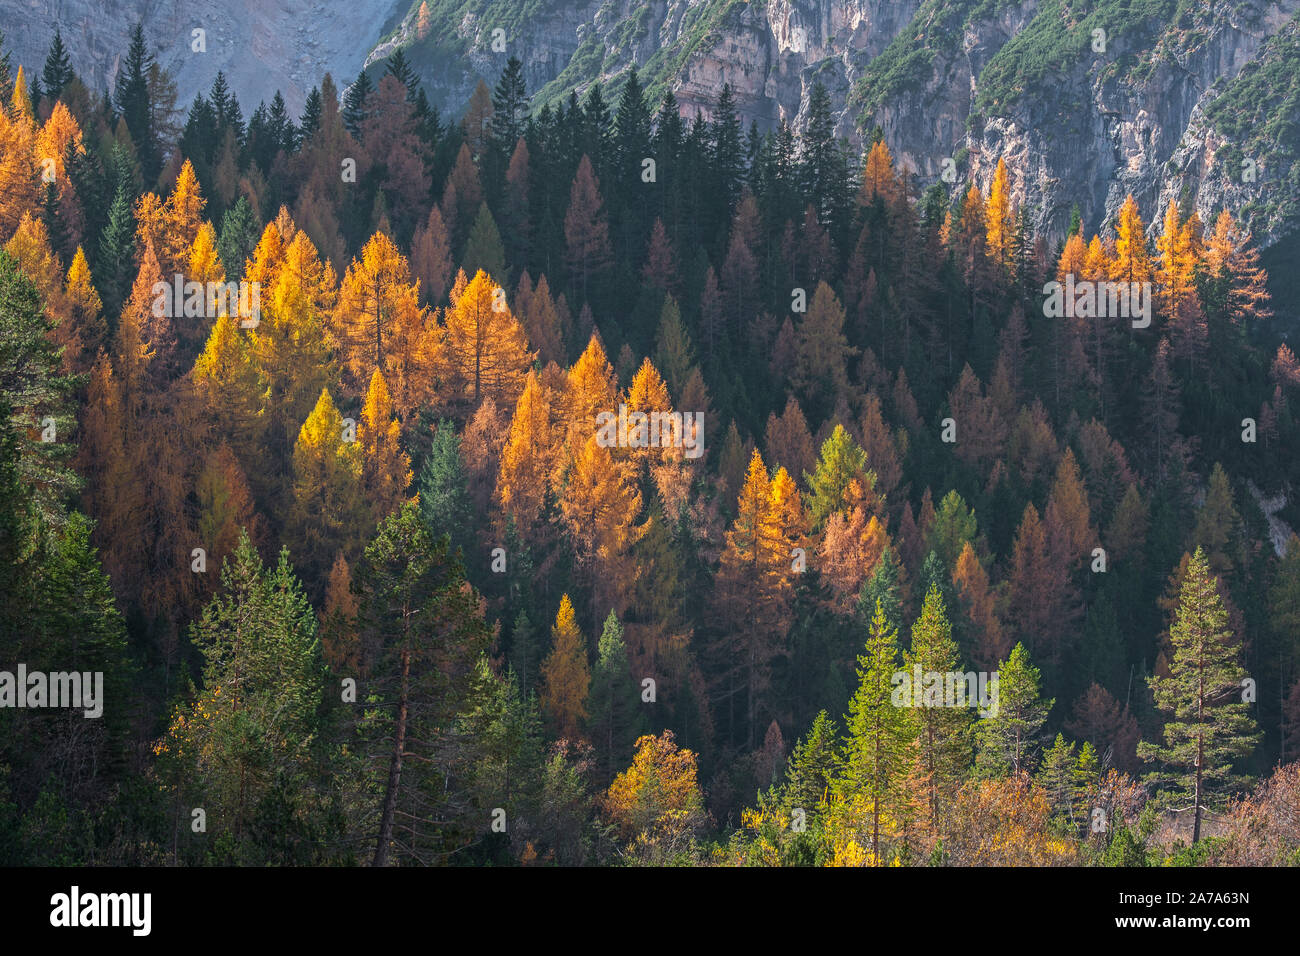 Mélèze d'Europe (Larix decidua) et sapins dans les forêts de conifères sur le versant de montagne montrant couleurs d'automne à l'automne Banque D'Images